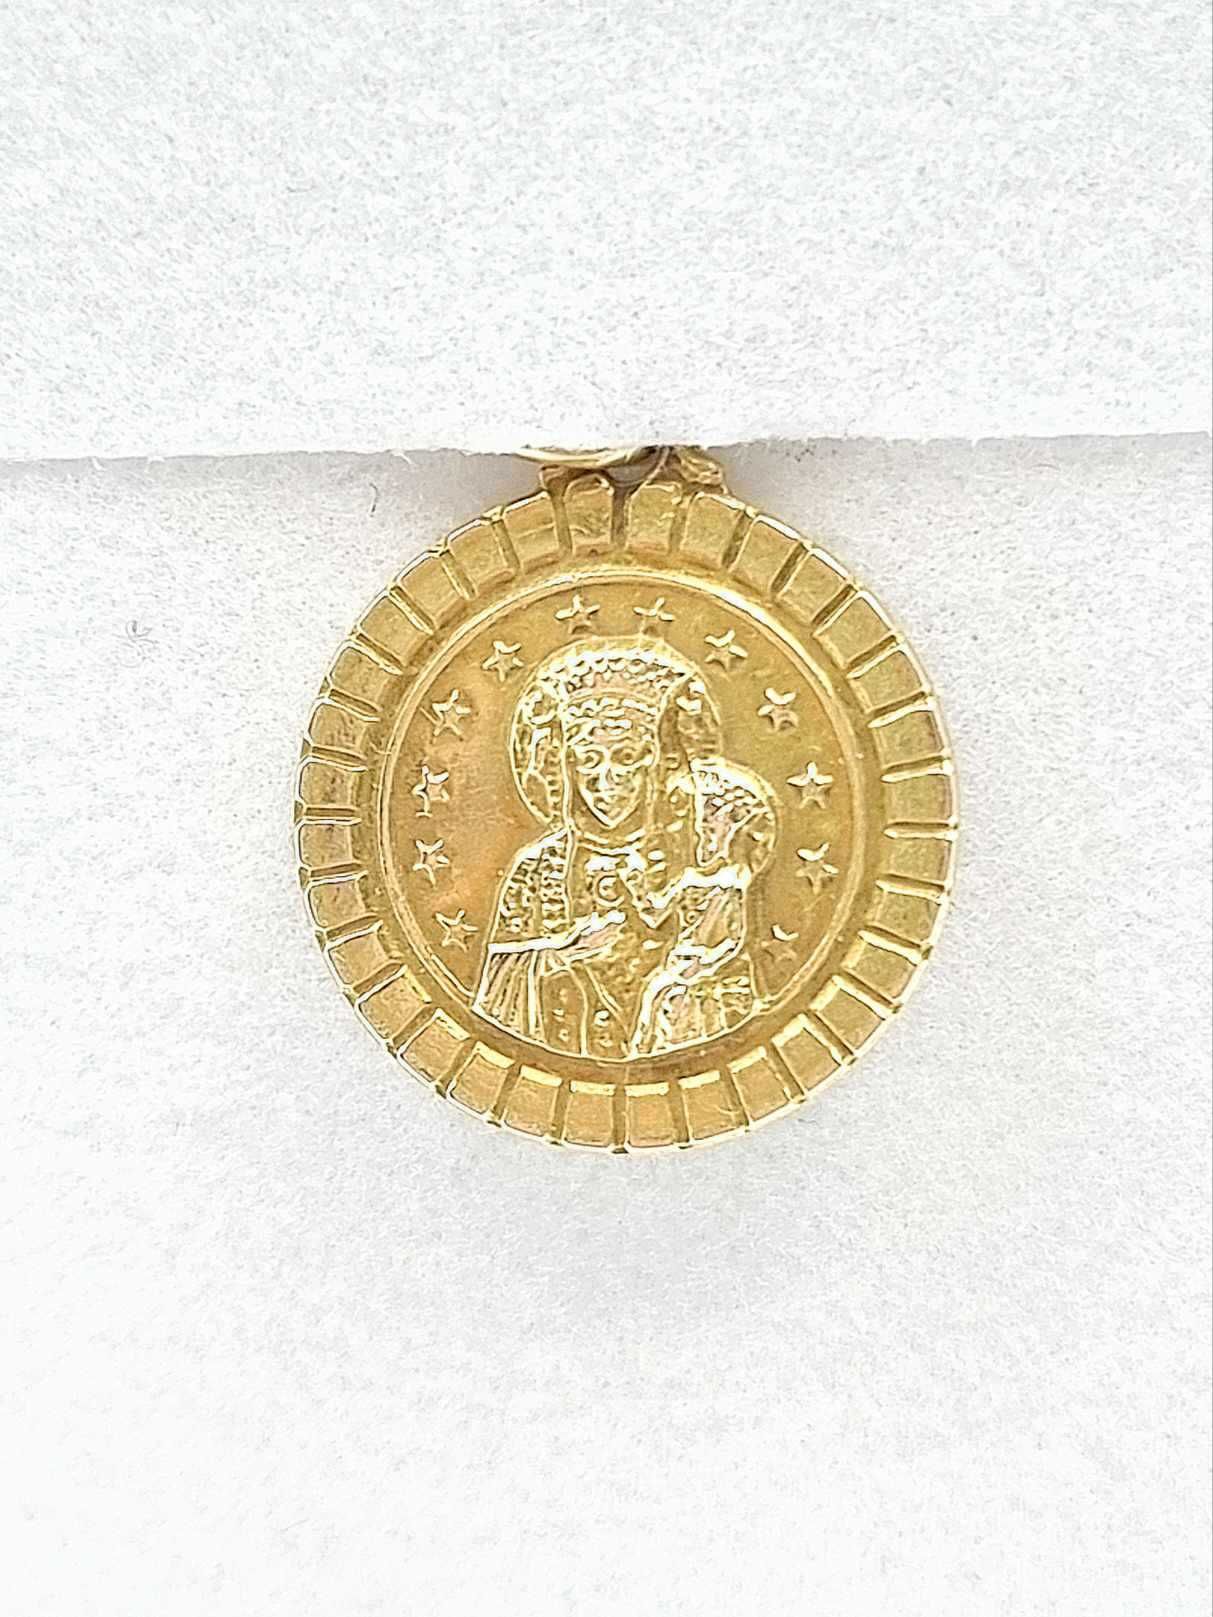 Złota zawieszka medalik Matka Boska 585 1,5g 1,1 cm